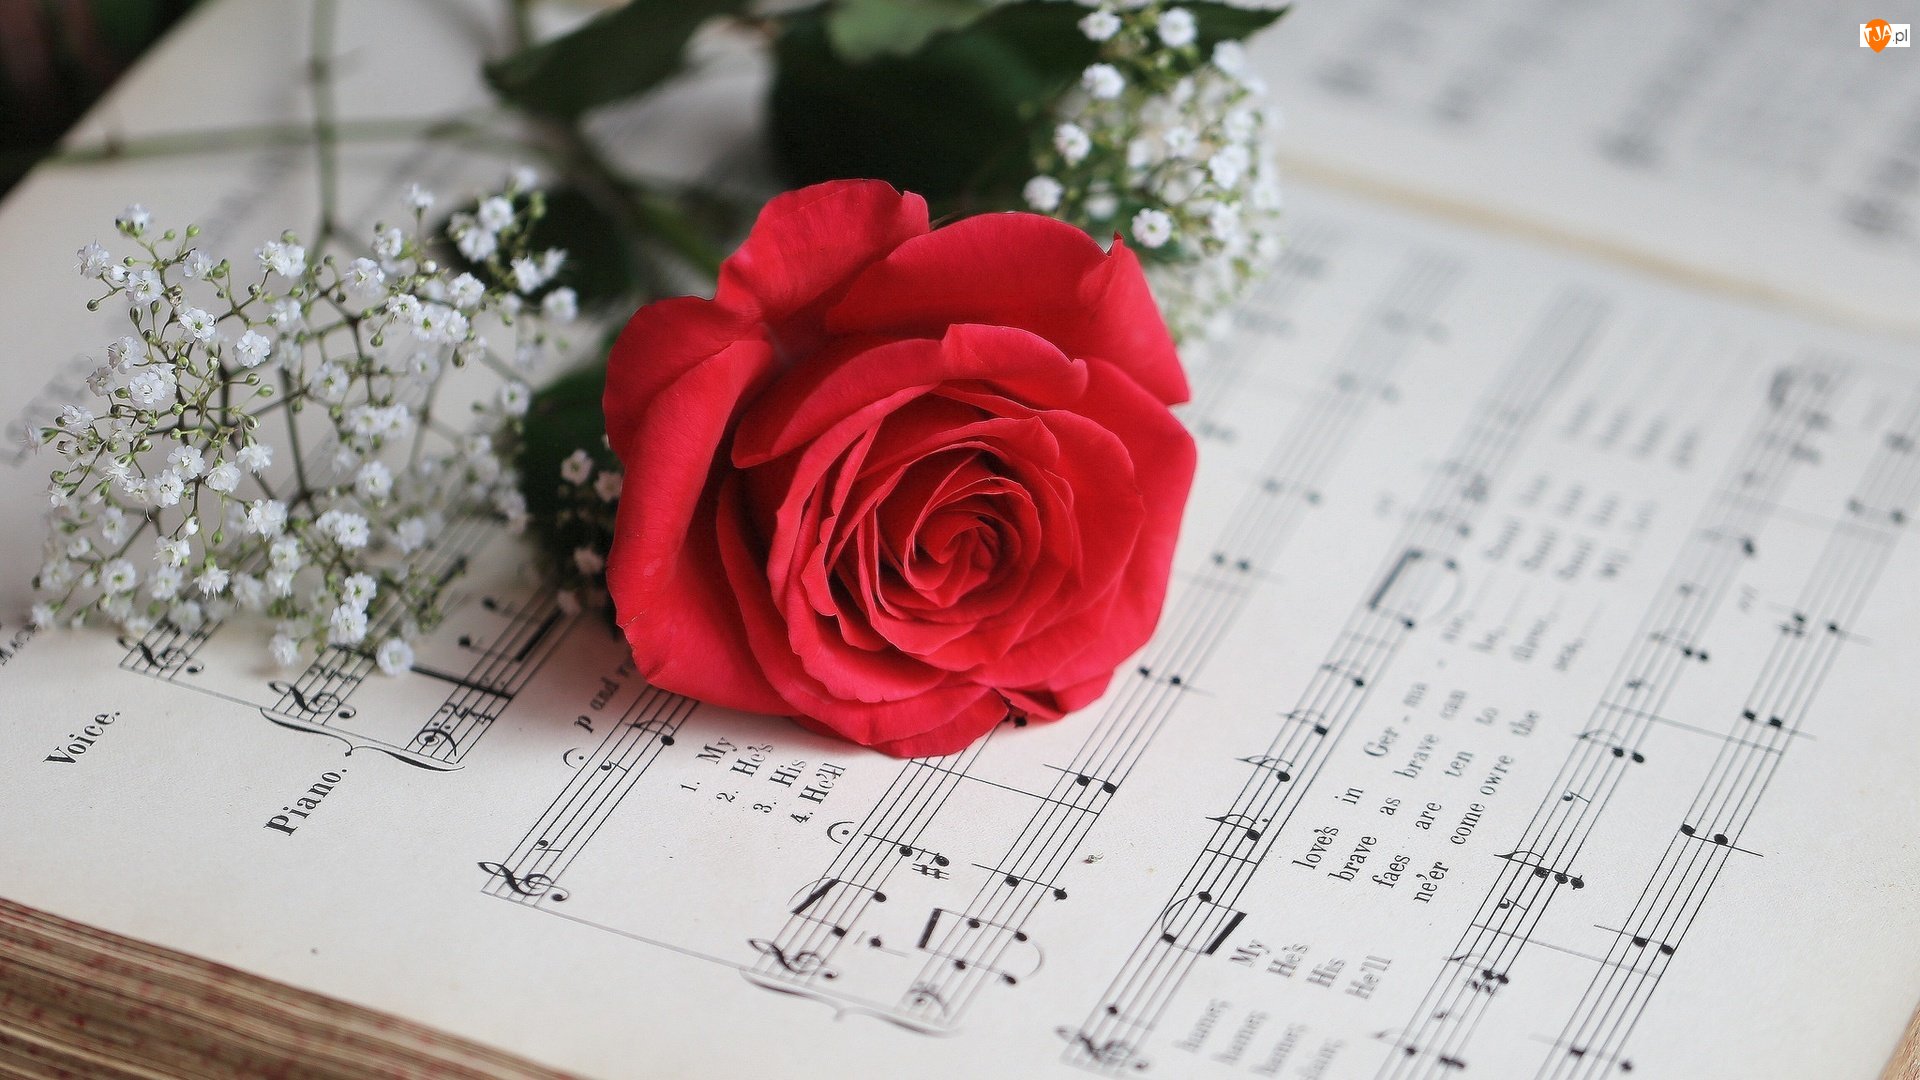 Нежные песни без слов. Ноты и цветы. Цветы для музыканта. Красивый фон с нотами и цветами. Музыкальный букет цветов.